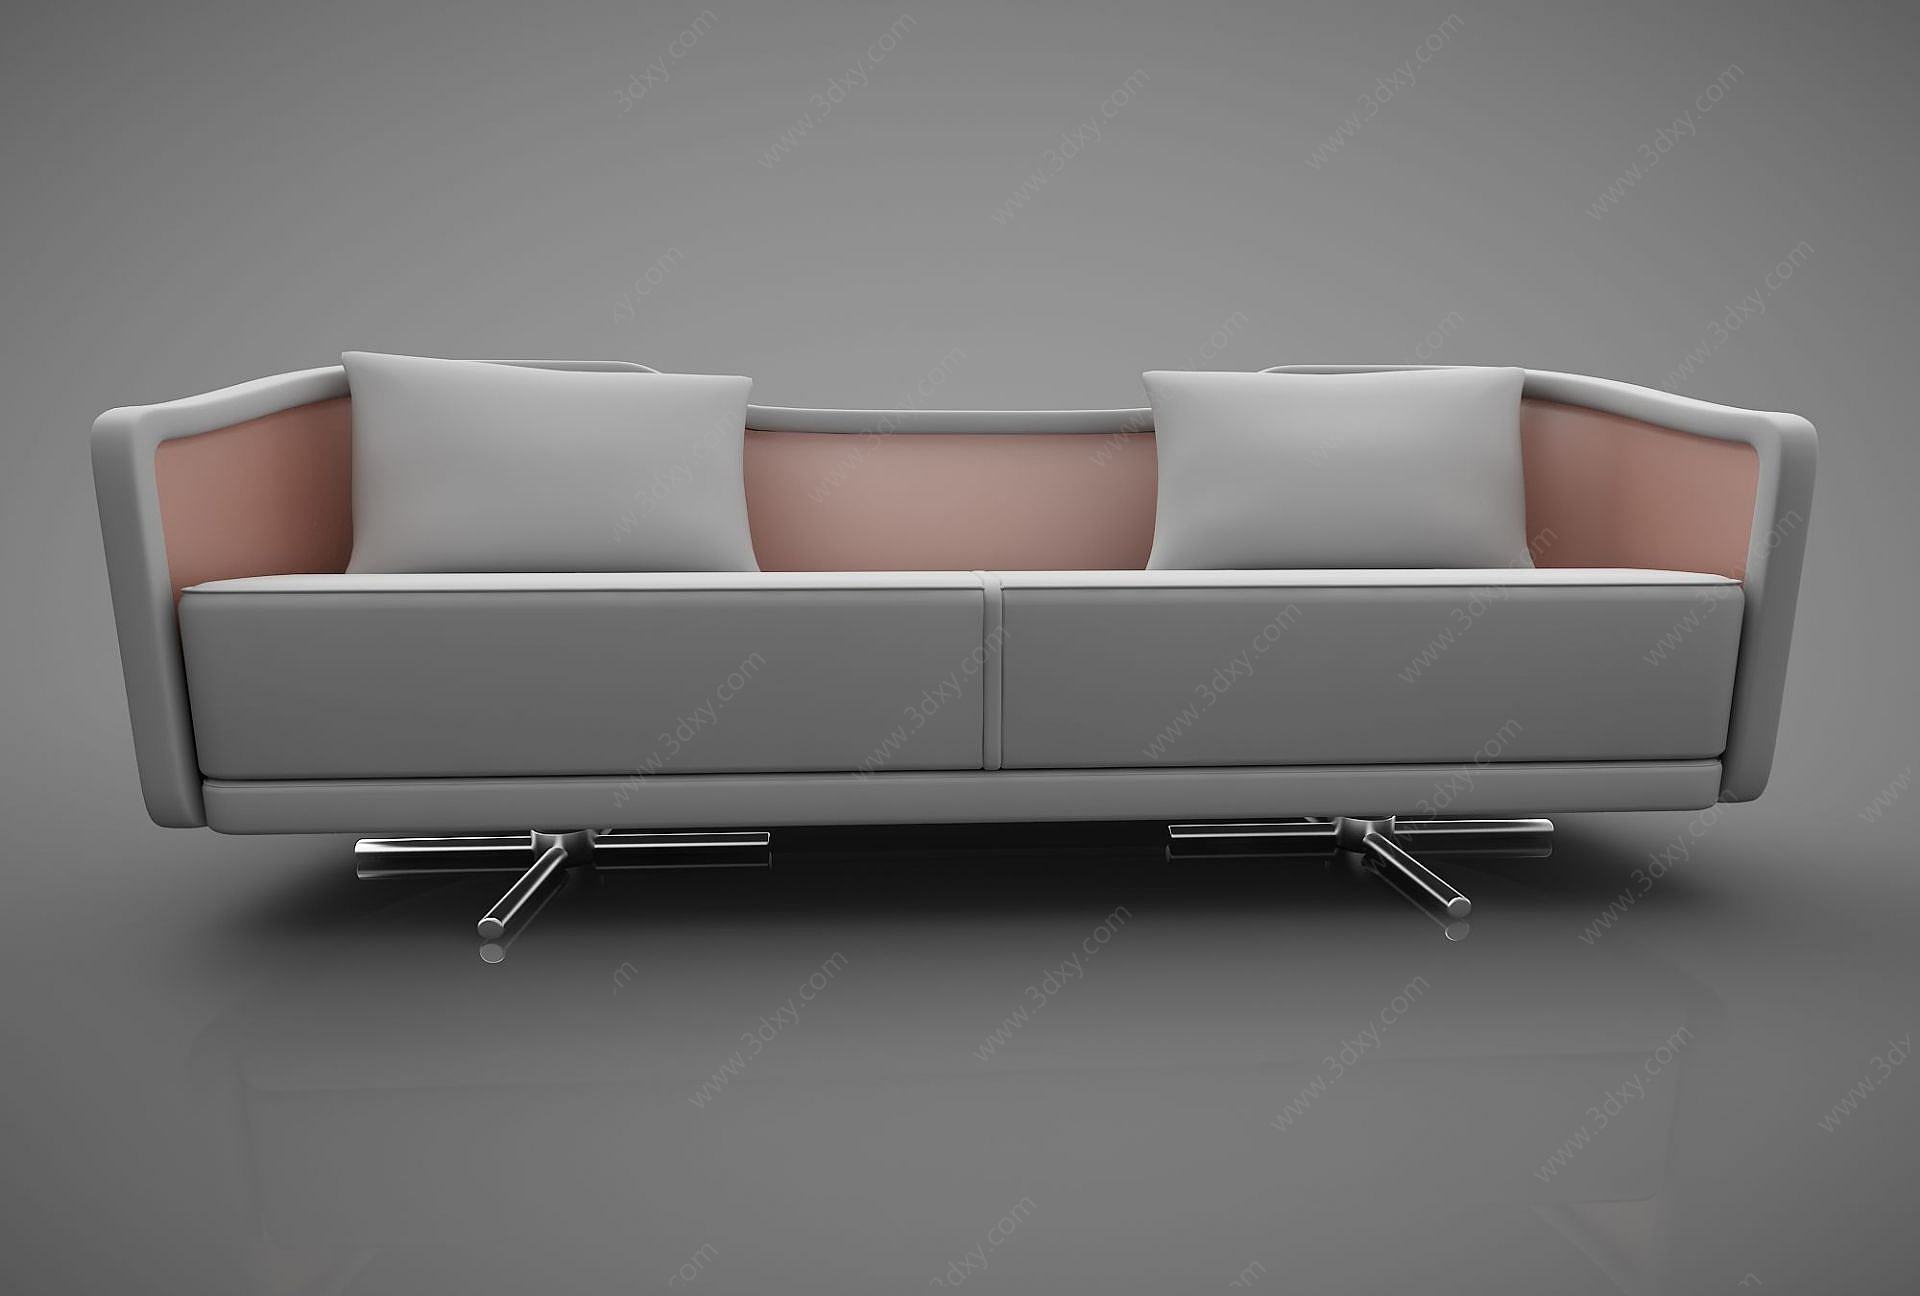 皮质双人沙发3D模型